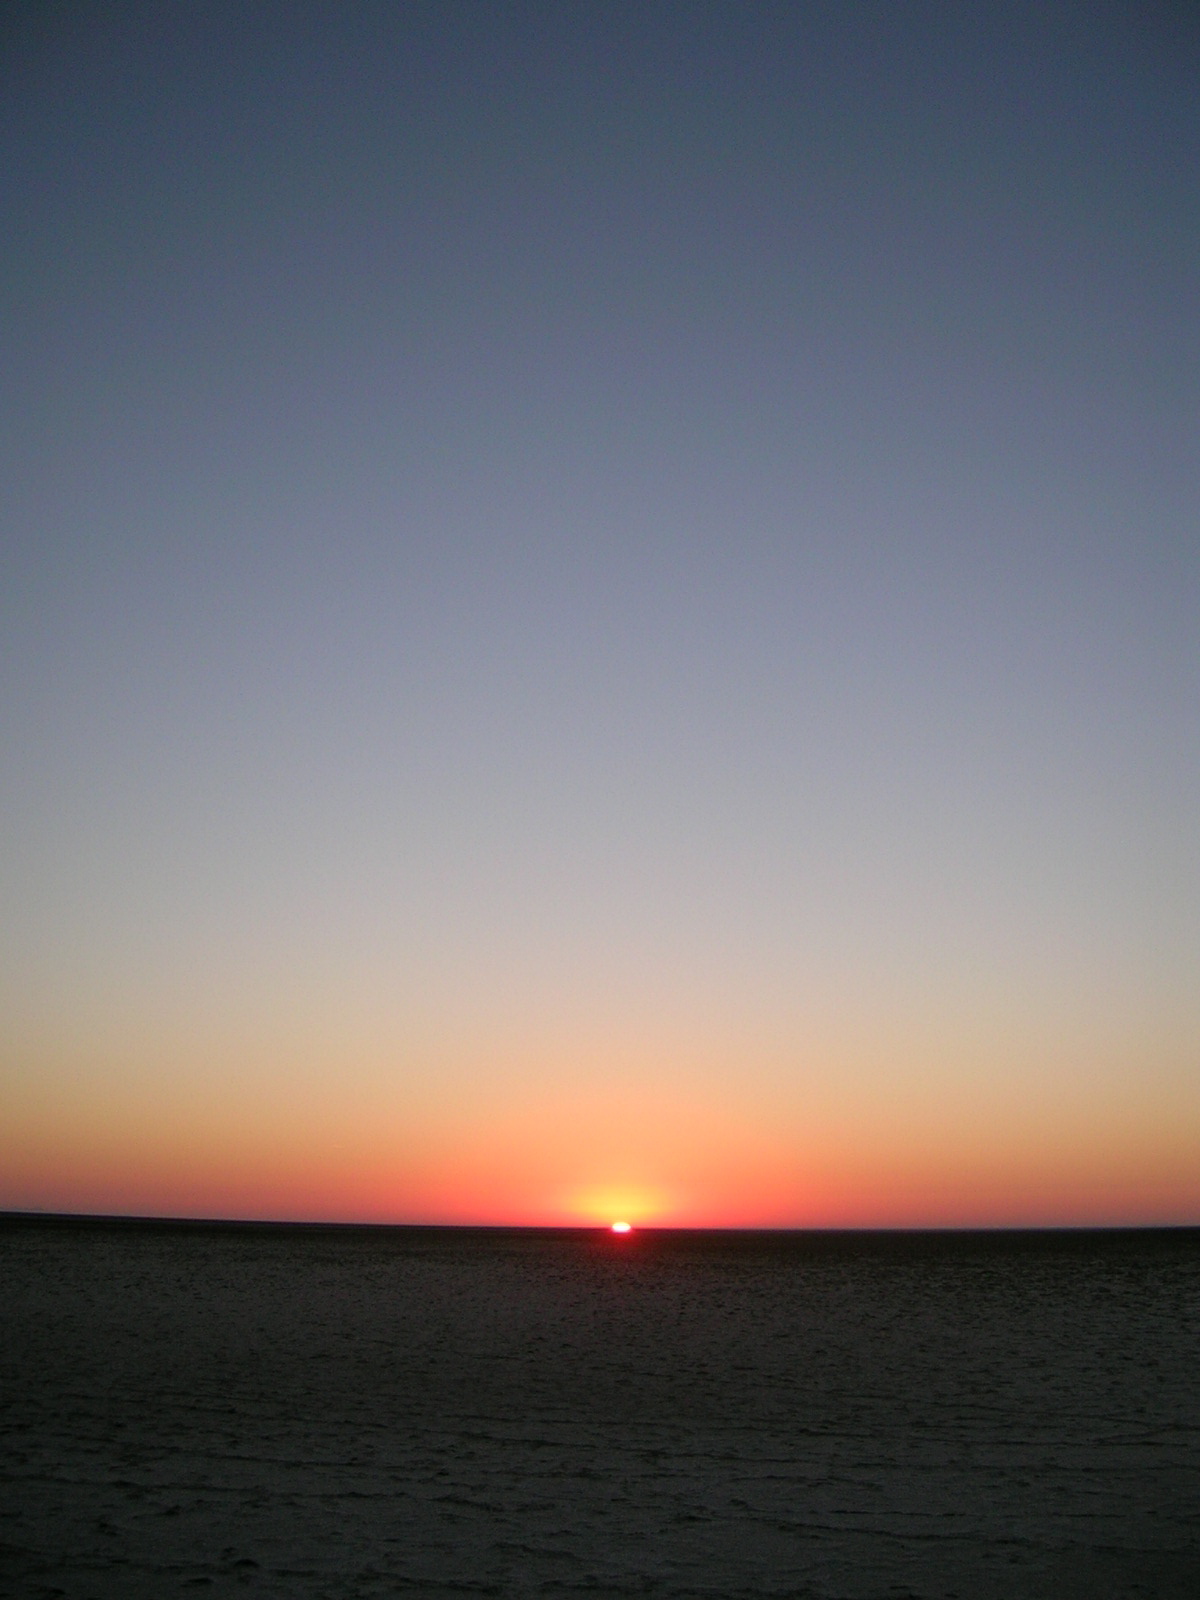 Sahara, 06:25 am